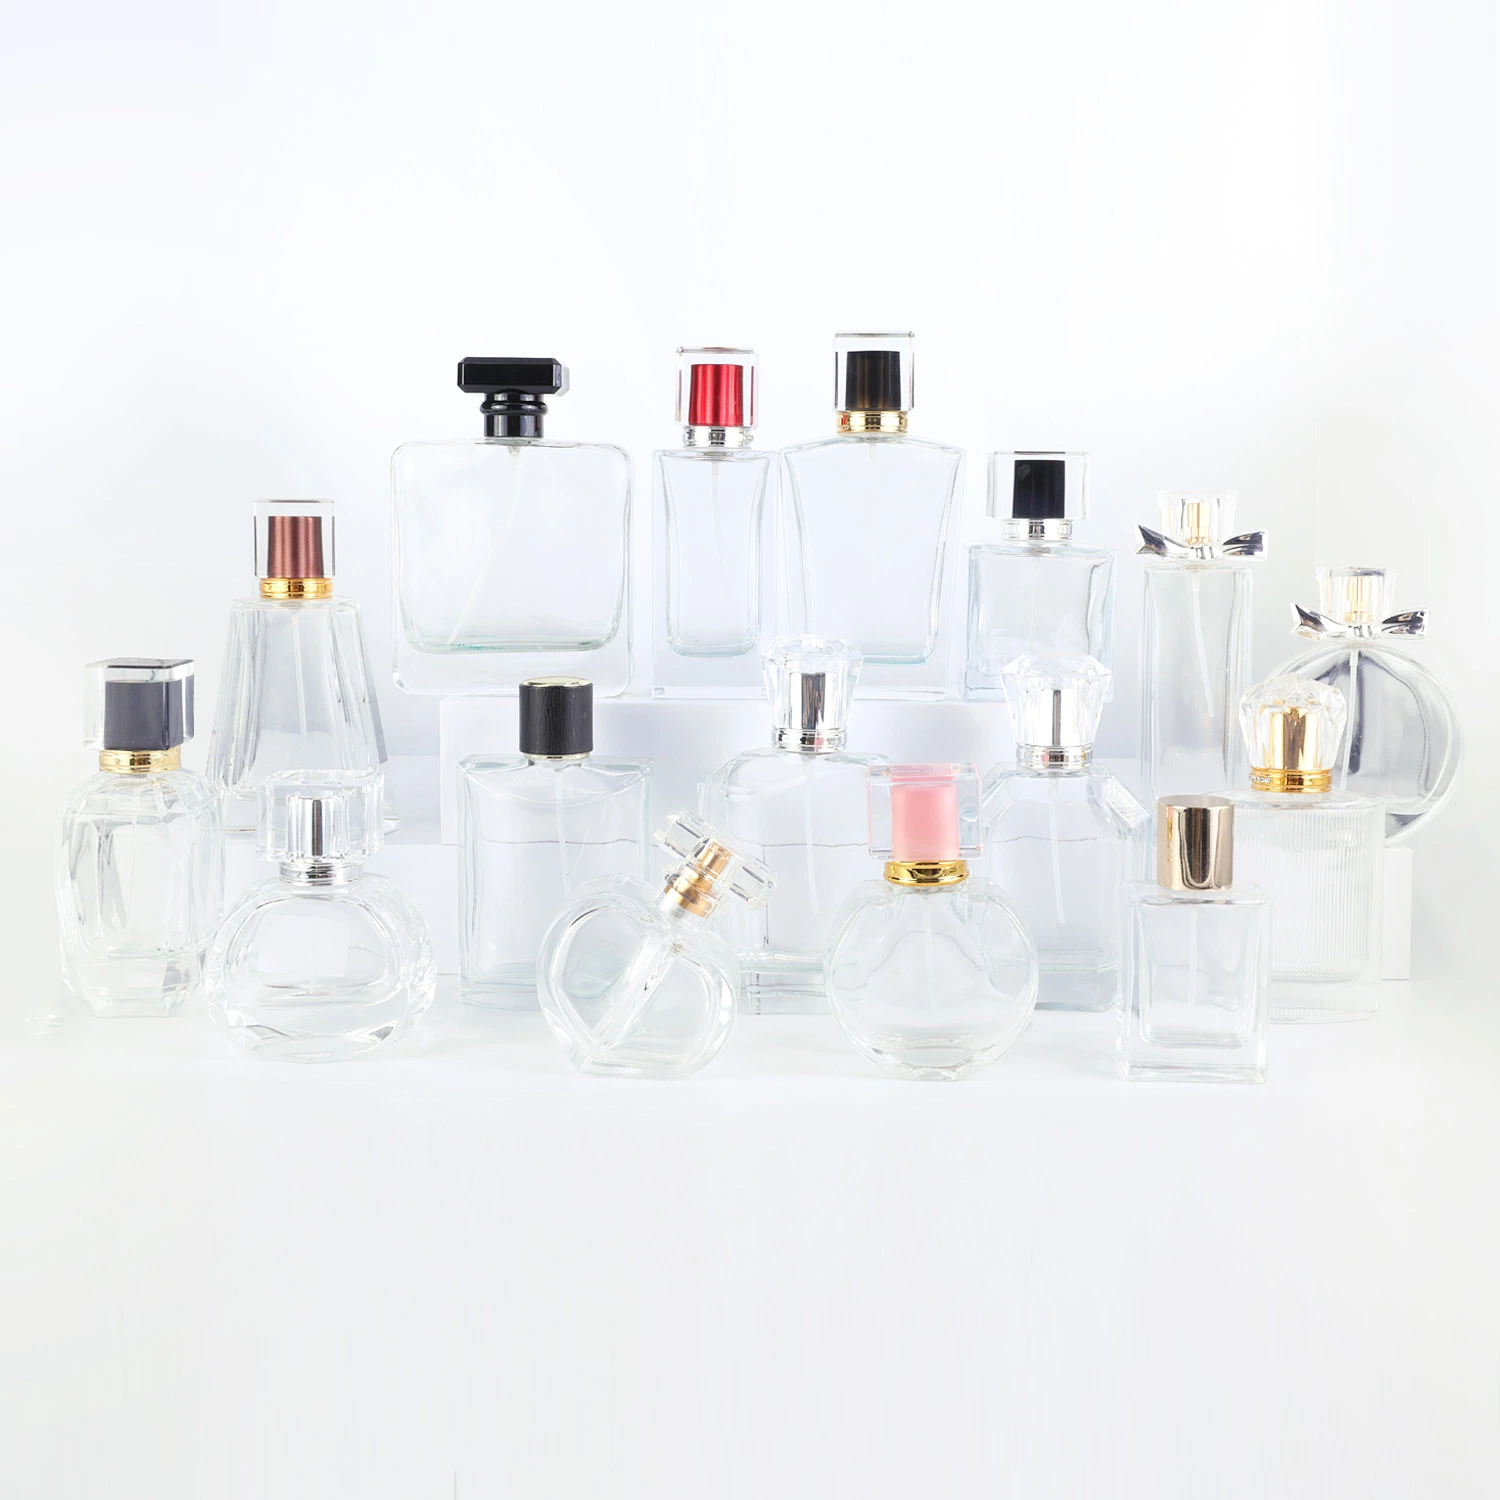 Rellenables de lujo Crystal 15ml 30ml 50ml frasco de perfume de envases de vidrio botellas cosméticos